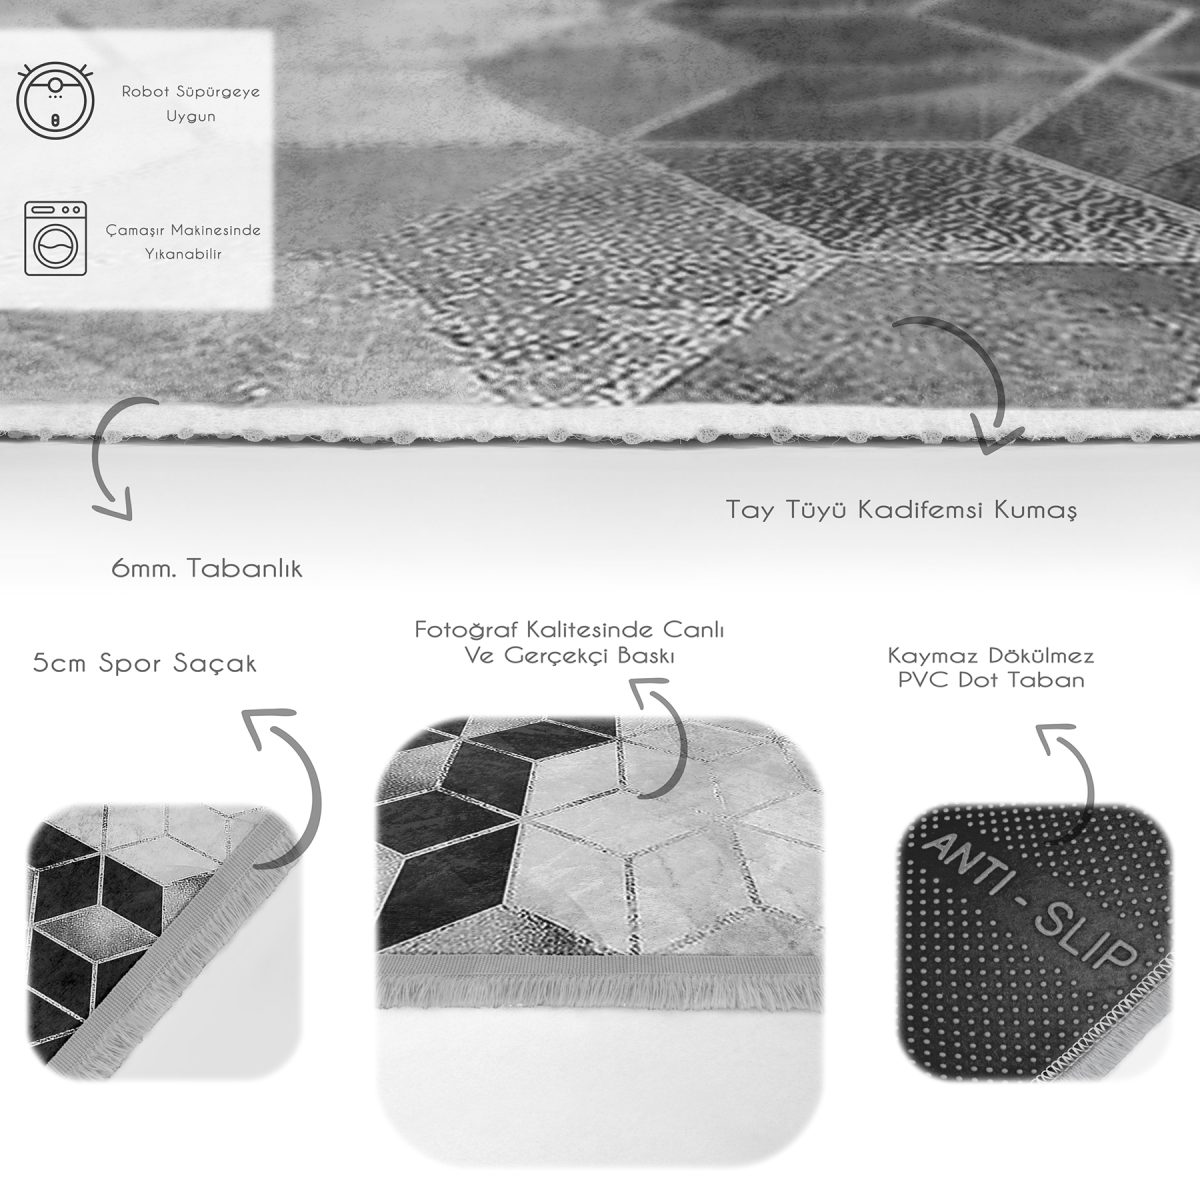 Siyah - Gri Zeminde Mozaik Motifli Mermer Desenli Geometrik Klasik Mutfak Banyo Dijital Baskılı Makinede Yıkanabilir Kaymaz Taban Saçaklı Halı Realhomes